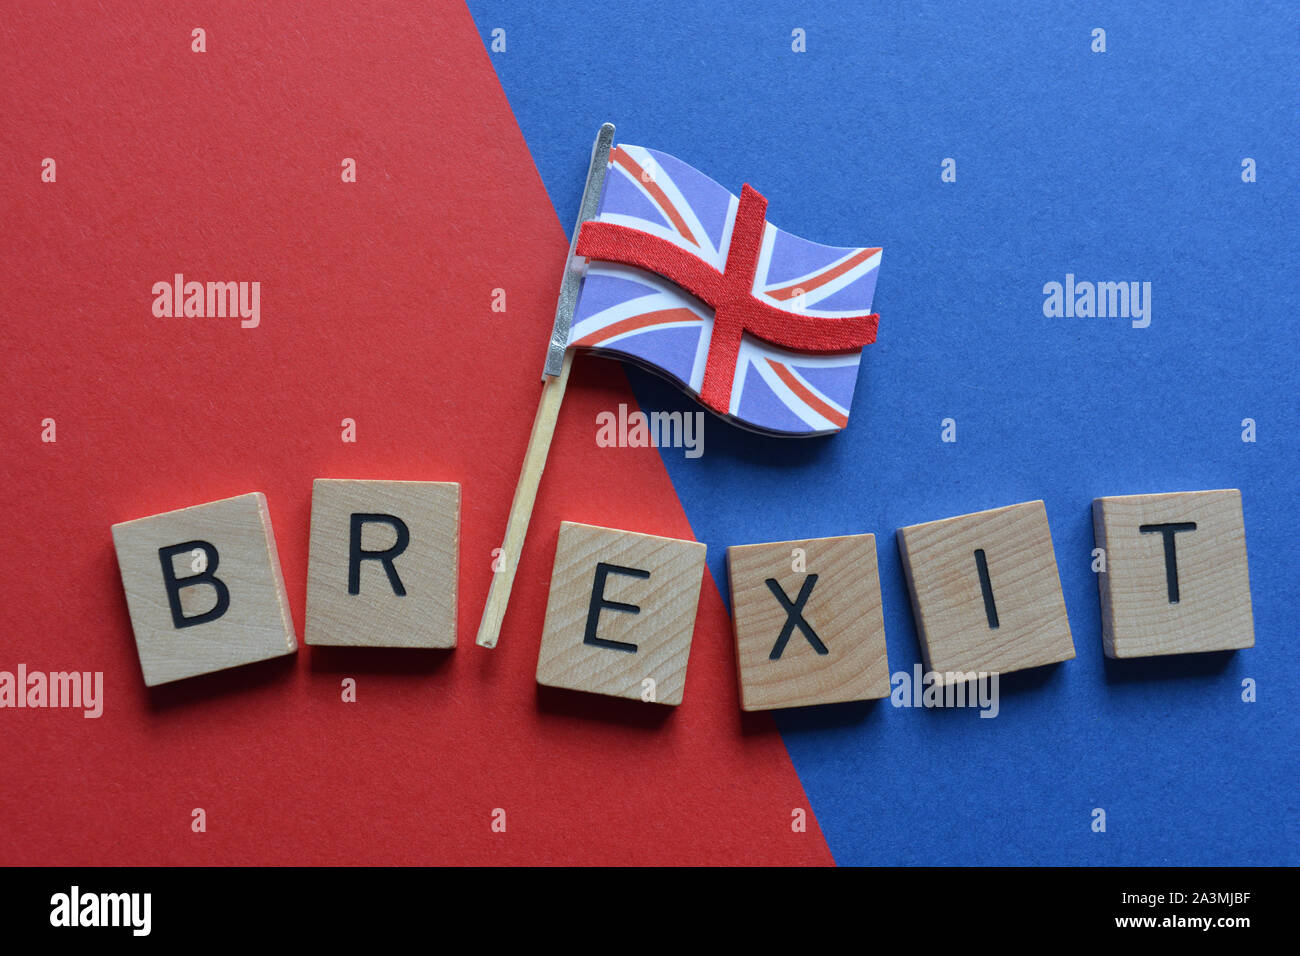 Brexit und Union Jack Flagge auf der blauen und roten Hintergrund Stockfoto